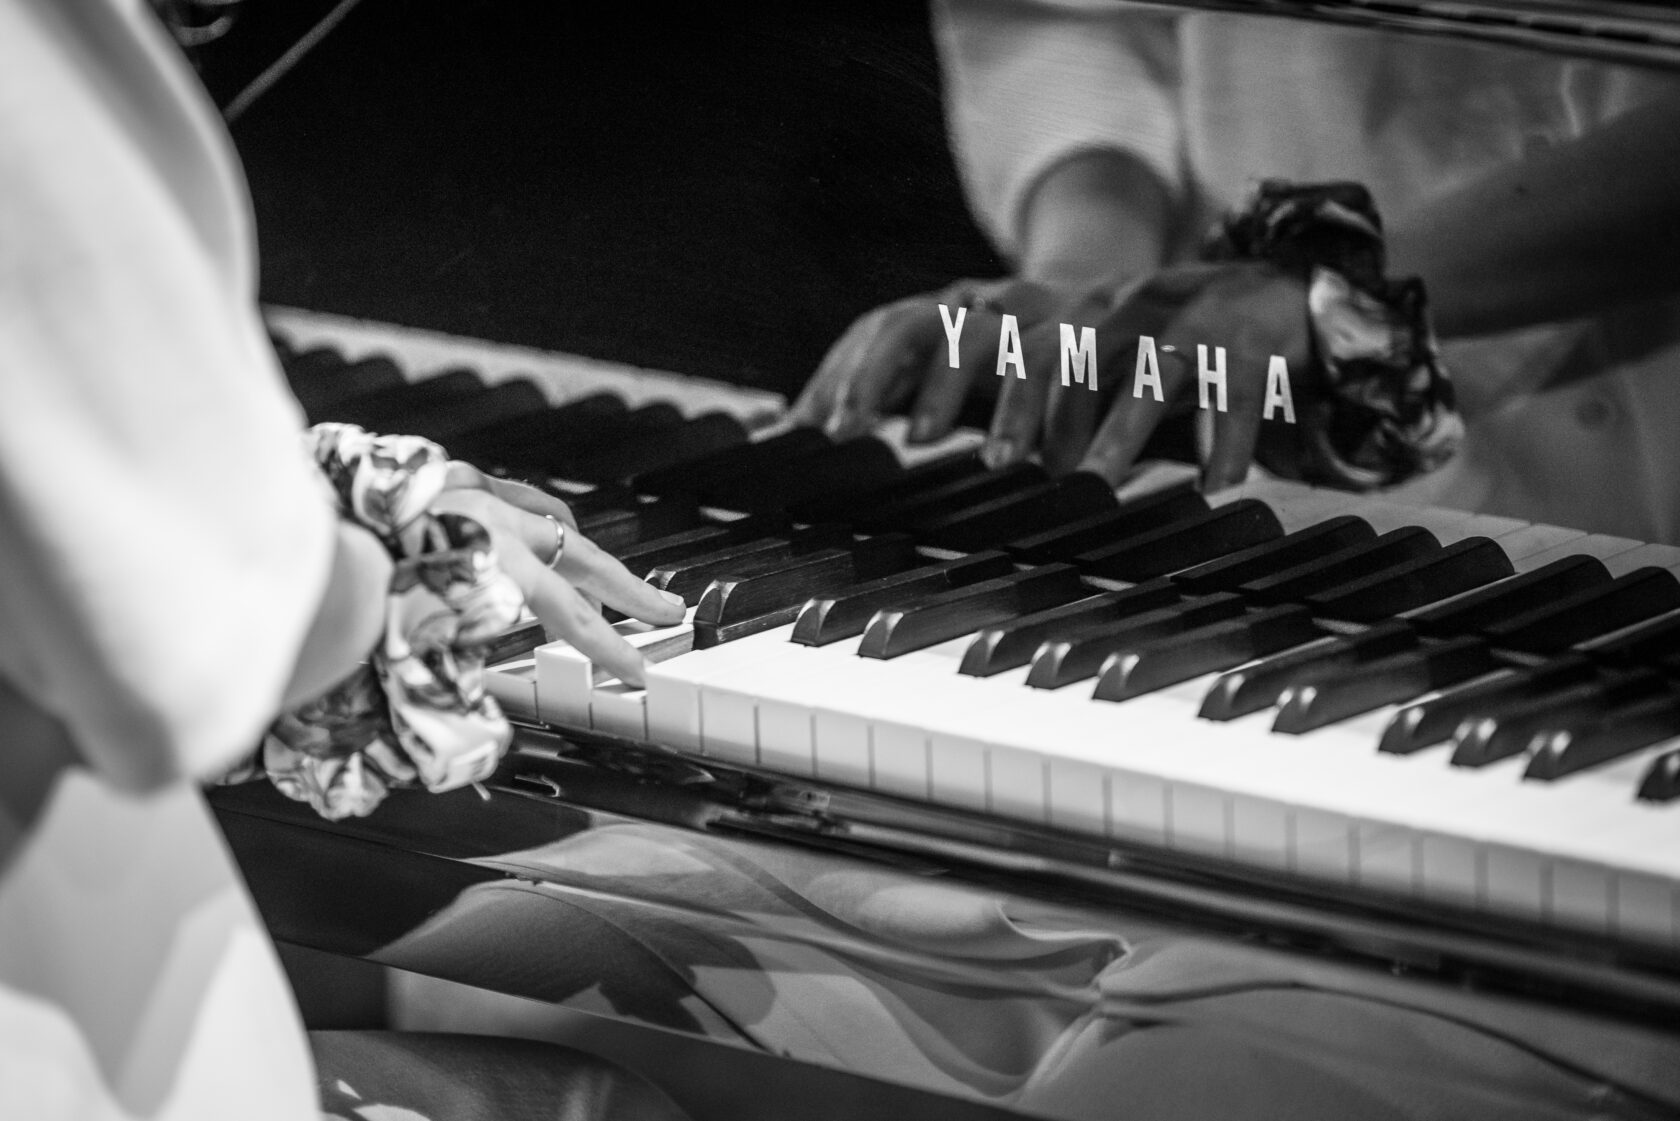 Yamaha Grand piano female hands 2 b&w